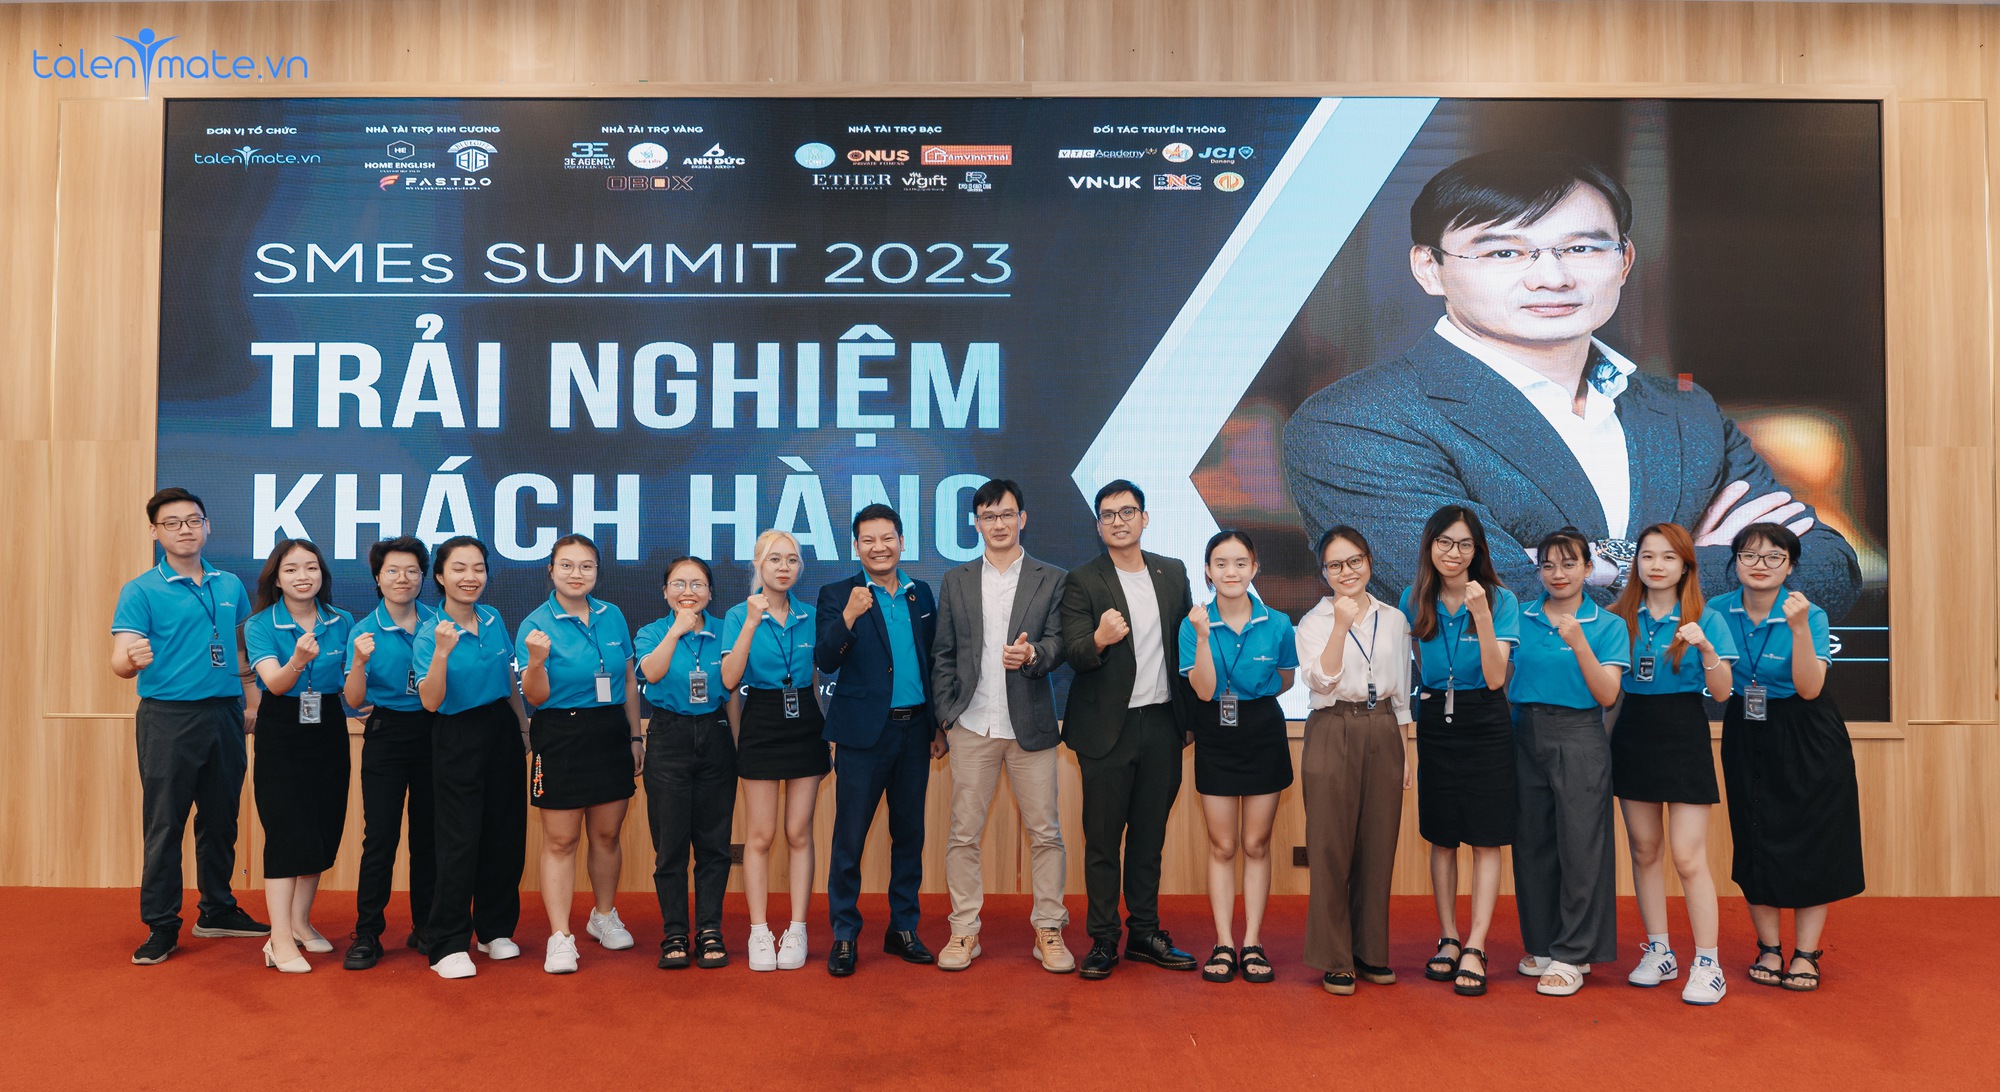 Talentmate ghi dấu với event Trải nghiệm khách hàng cùng chuyên gia Nguyễn Dương - Ảnh 1.